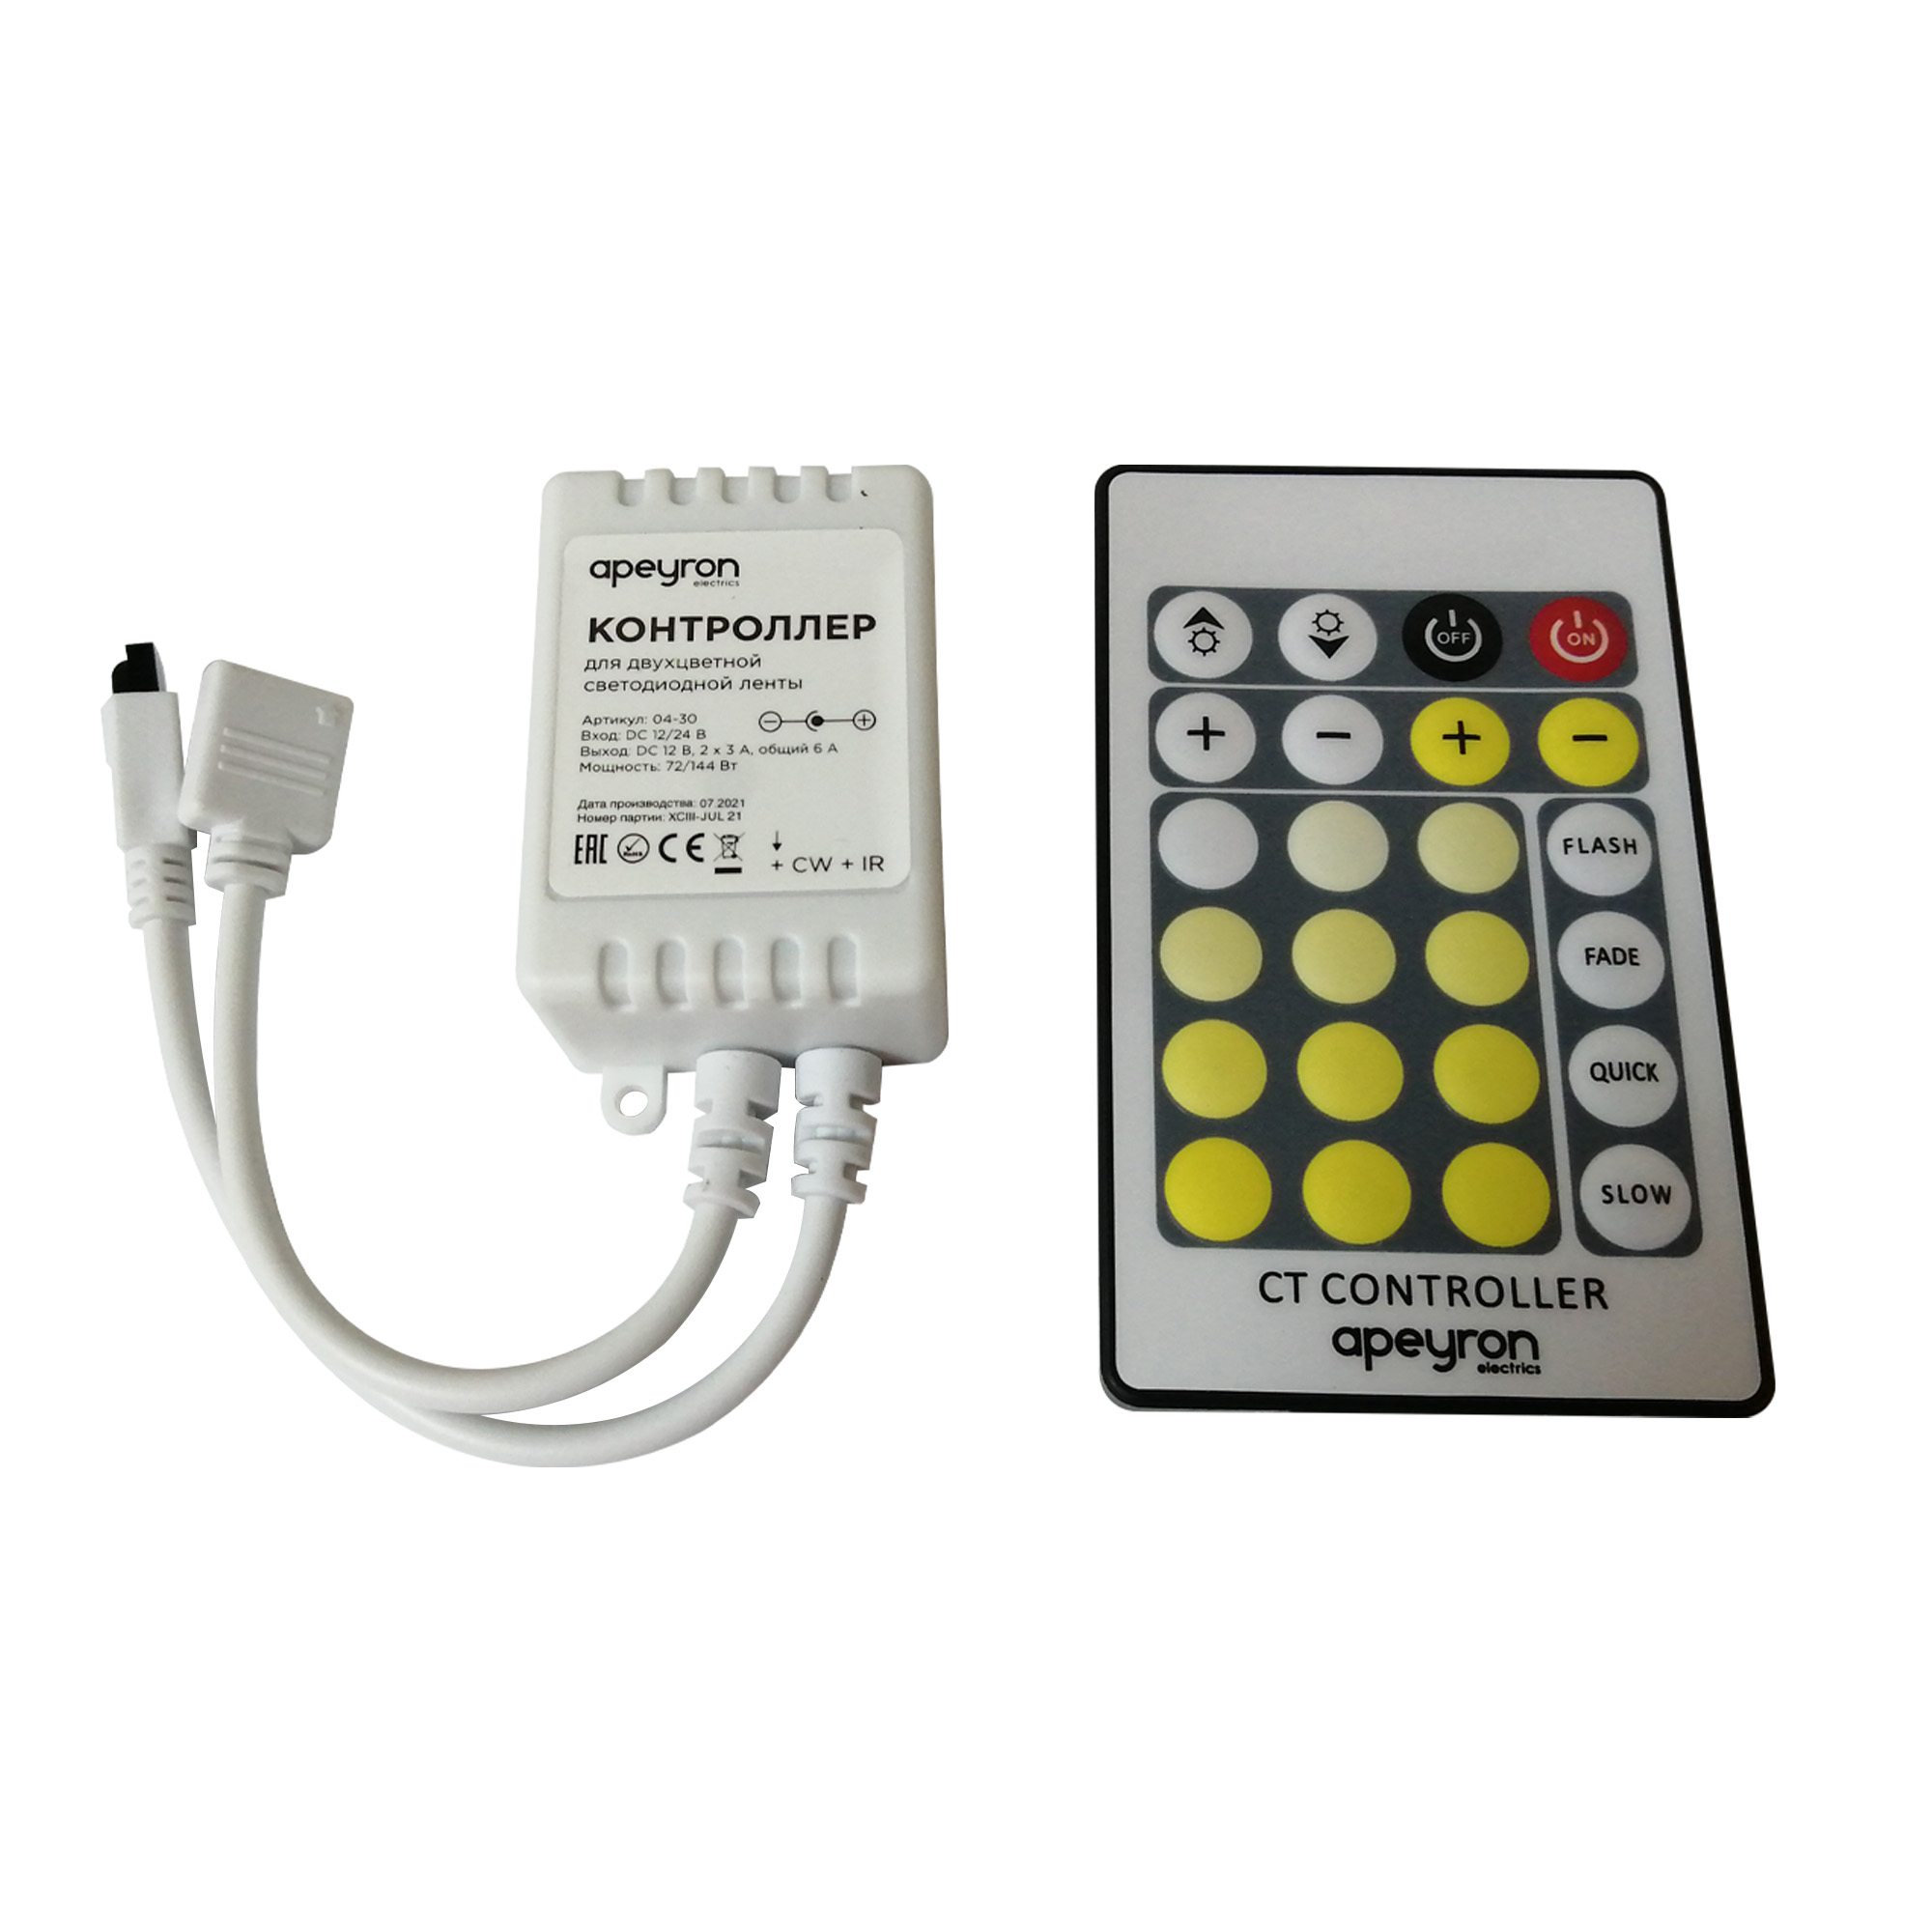 Контроллер Apeyron 04-30 для управления ССТ-лентой, IP20, пульт, цвет белый - фото 1